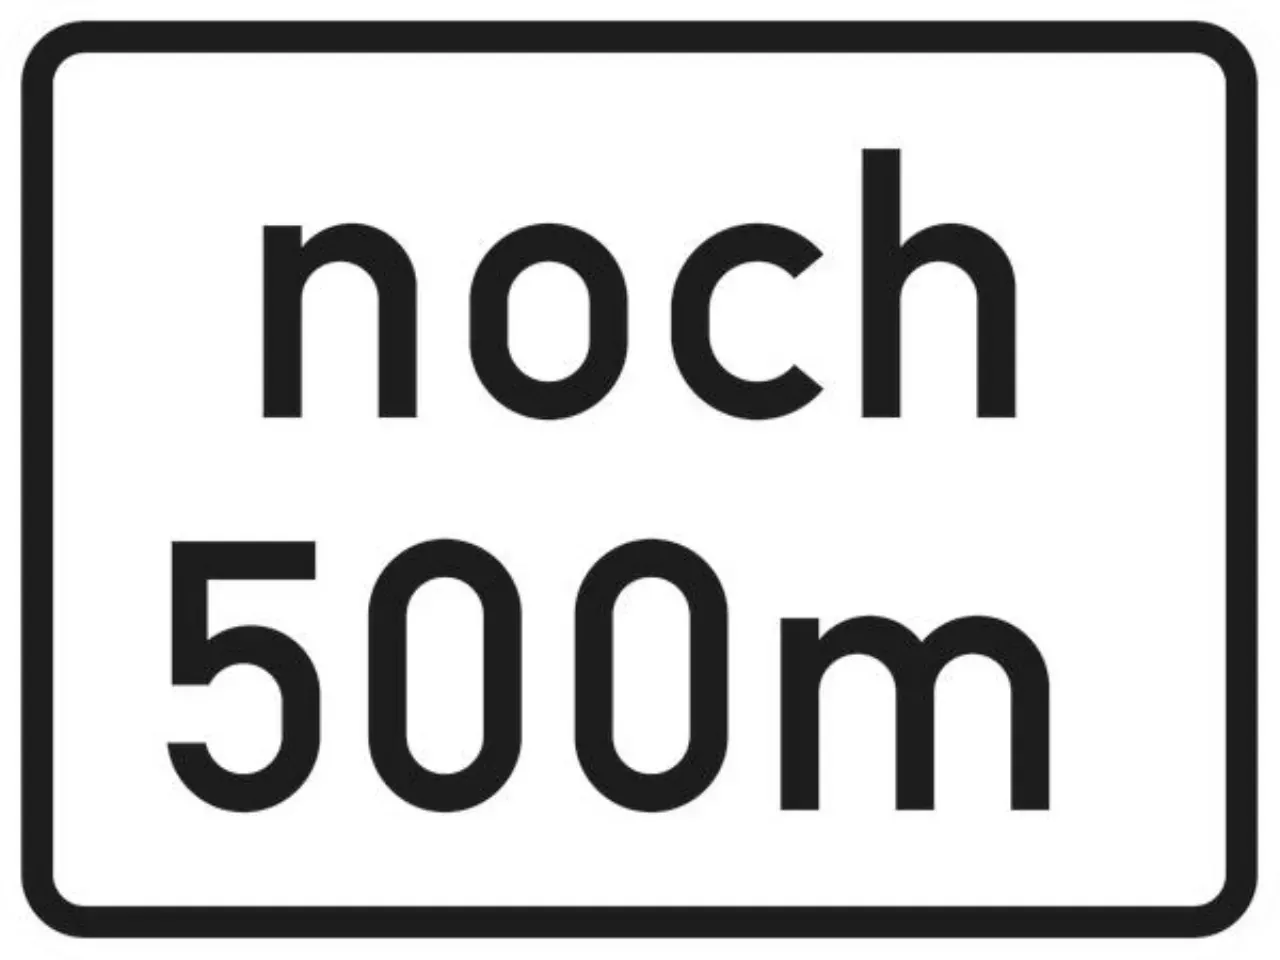 Zusatzzeichen 1000-1099 VZ1001-32 noch ? m gemäß VwV-StVO in Tunneln - 315x420 2 mm RA1 Bild 2 von 4 für Verkehrszeichen